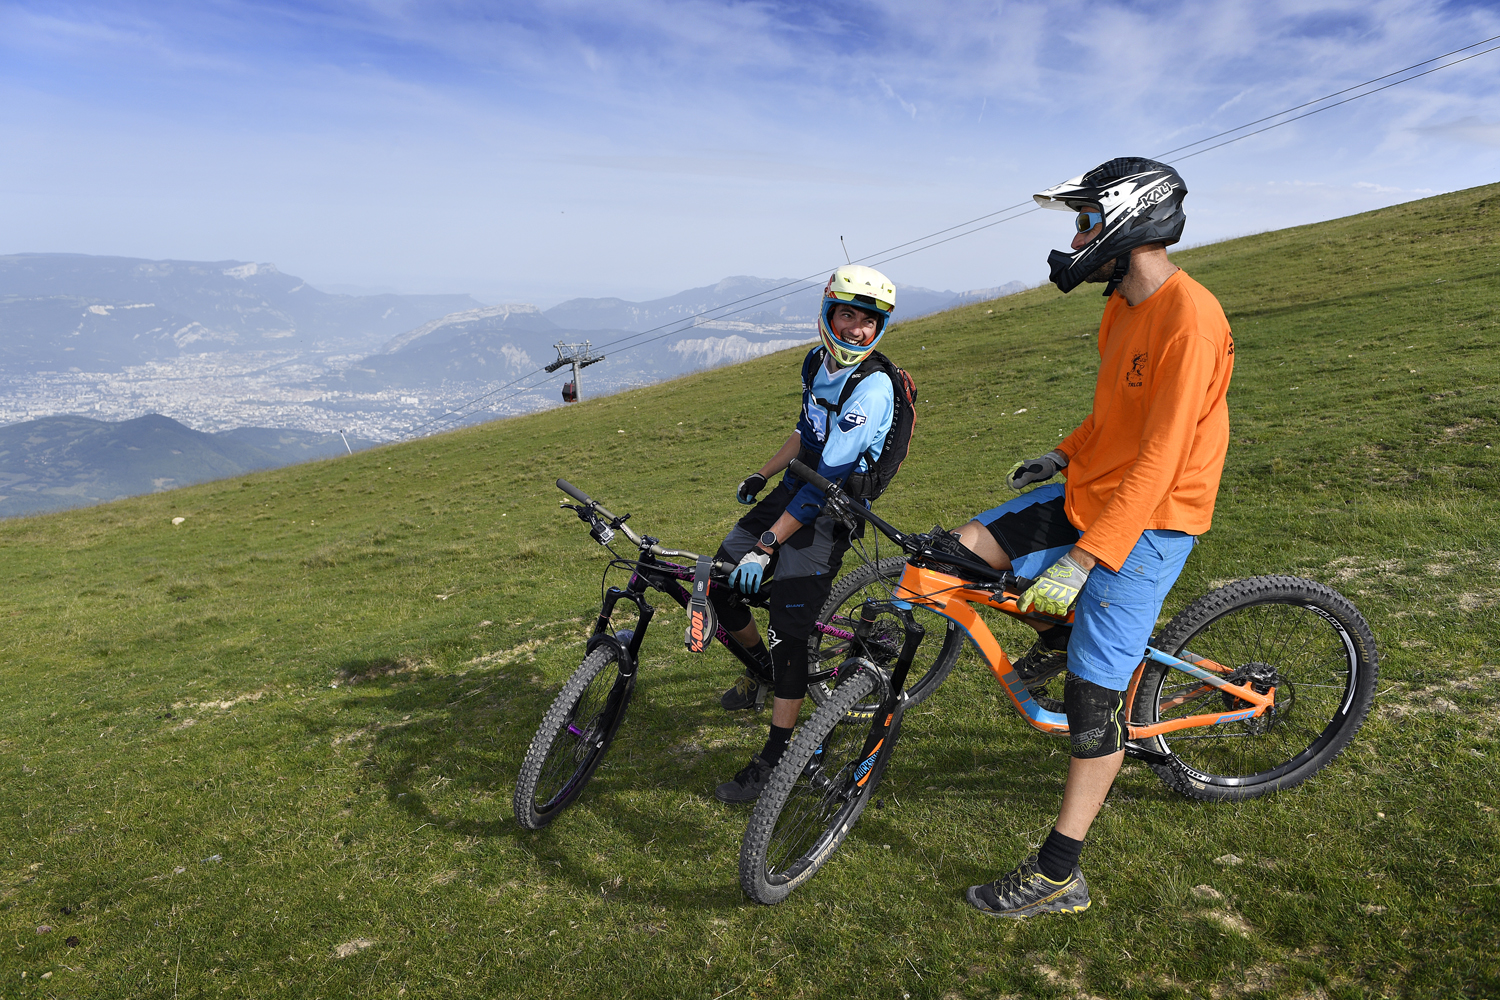 Accompanied downhill mountain biking / mountain biking / biking gears / cross-country biking / electric cross -country biking